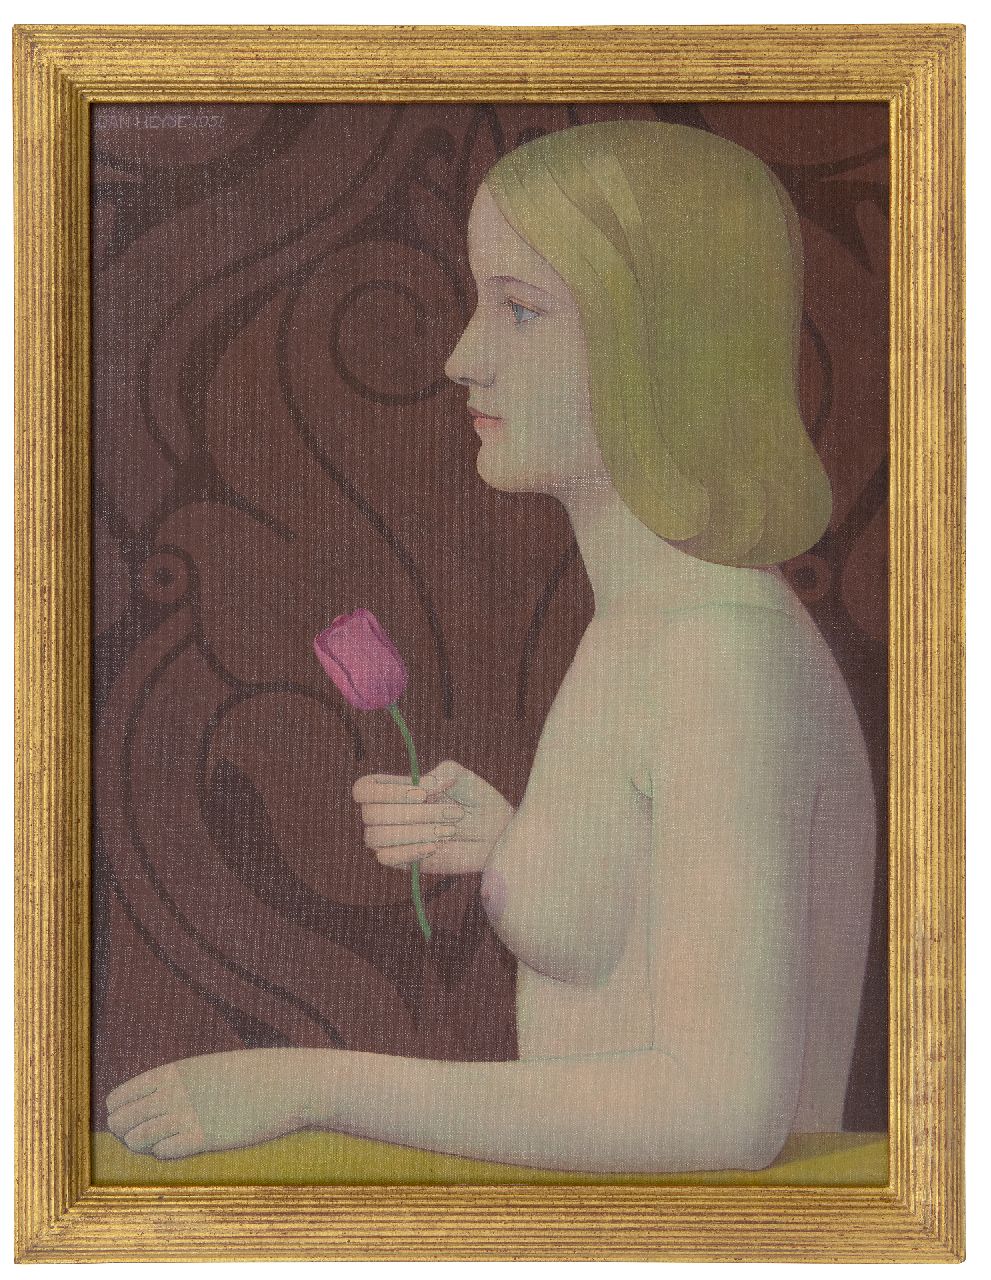 Heyse J.  | Jan Heyse | Schilderijen te koop aangeboden | Naakt met een tulp, olieverf op doek op board 54,6 x 40,3 cm, gesigneerd linksboven en gedateerd 1951